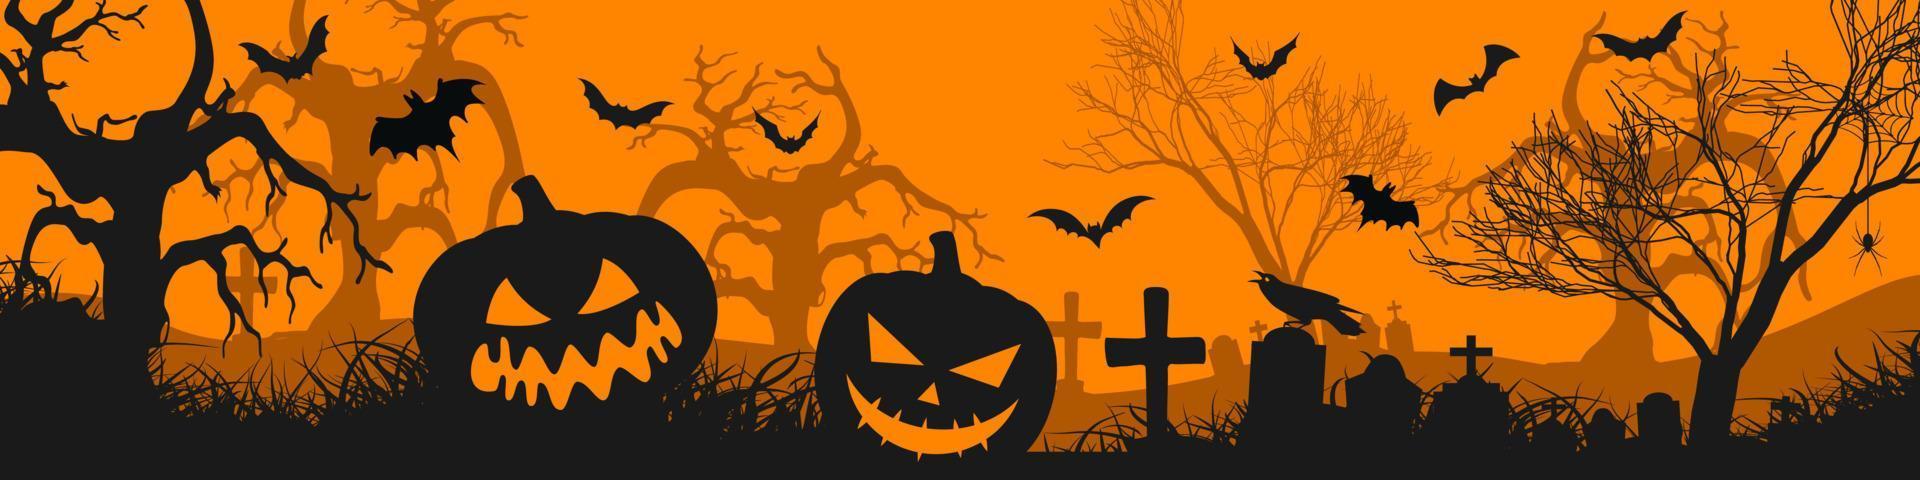 fond de nuit d'halloween avec des silhouettes de cimetière de citrouilles d'halloween et des chauves-souris effrayantes. vecteur